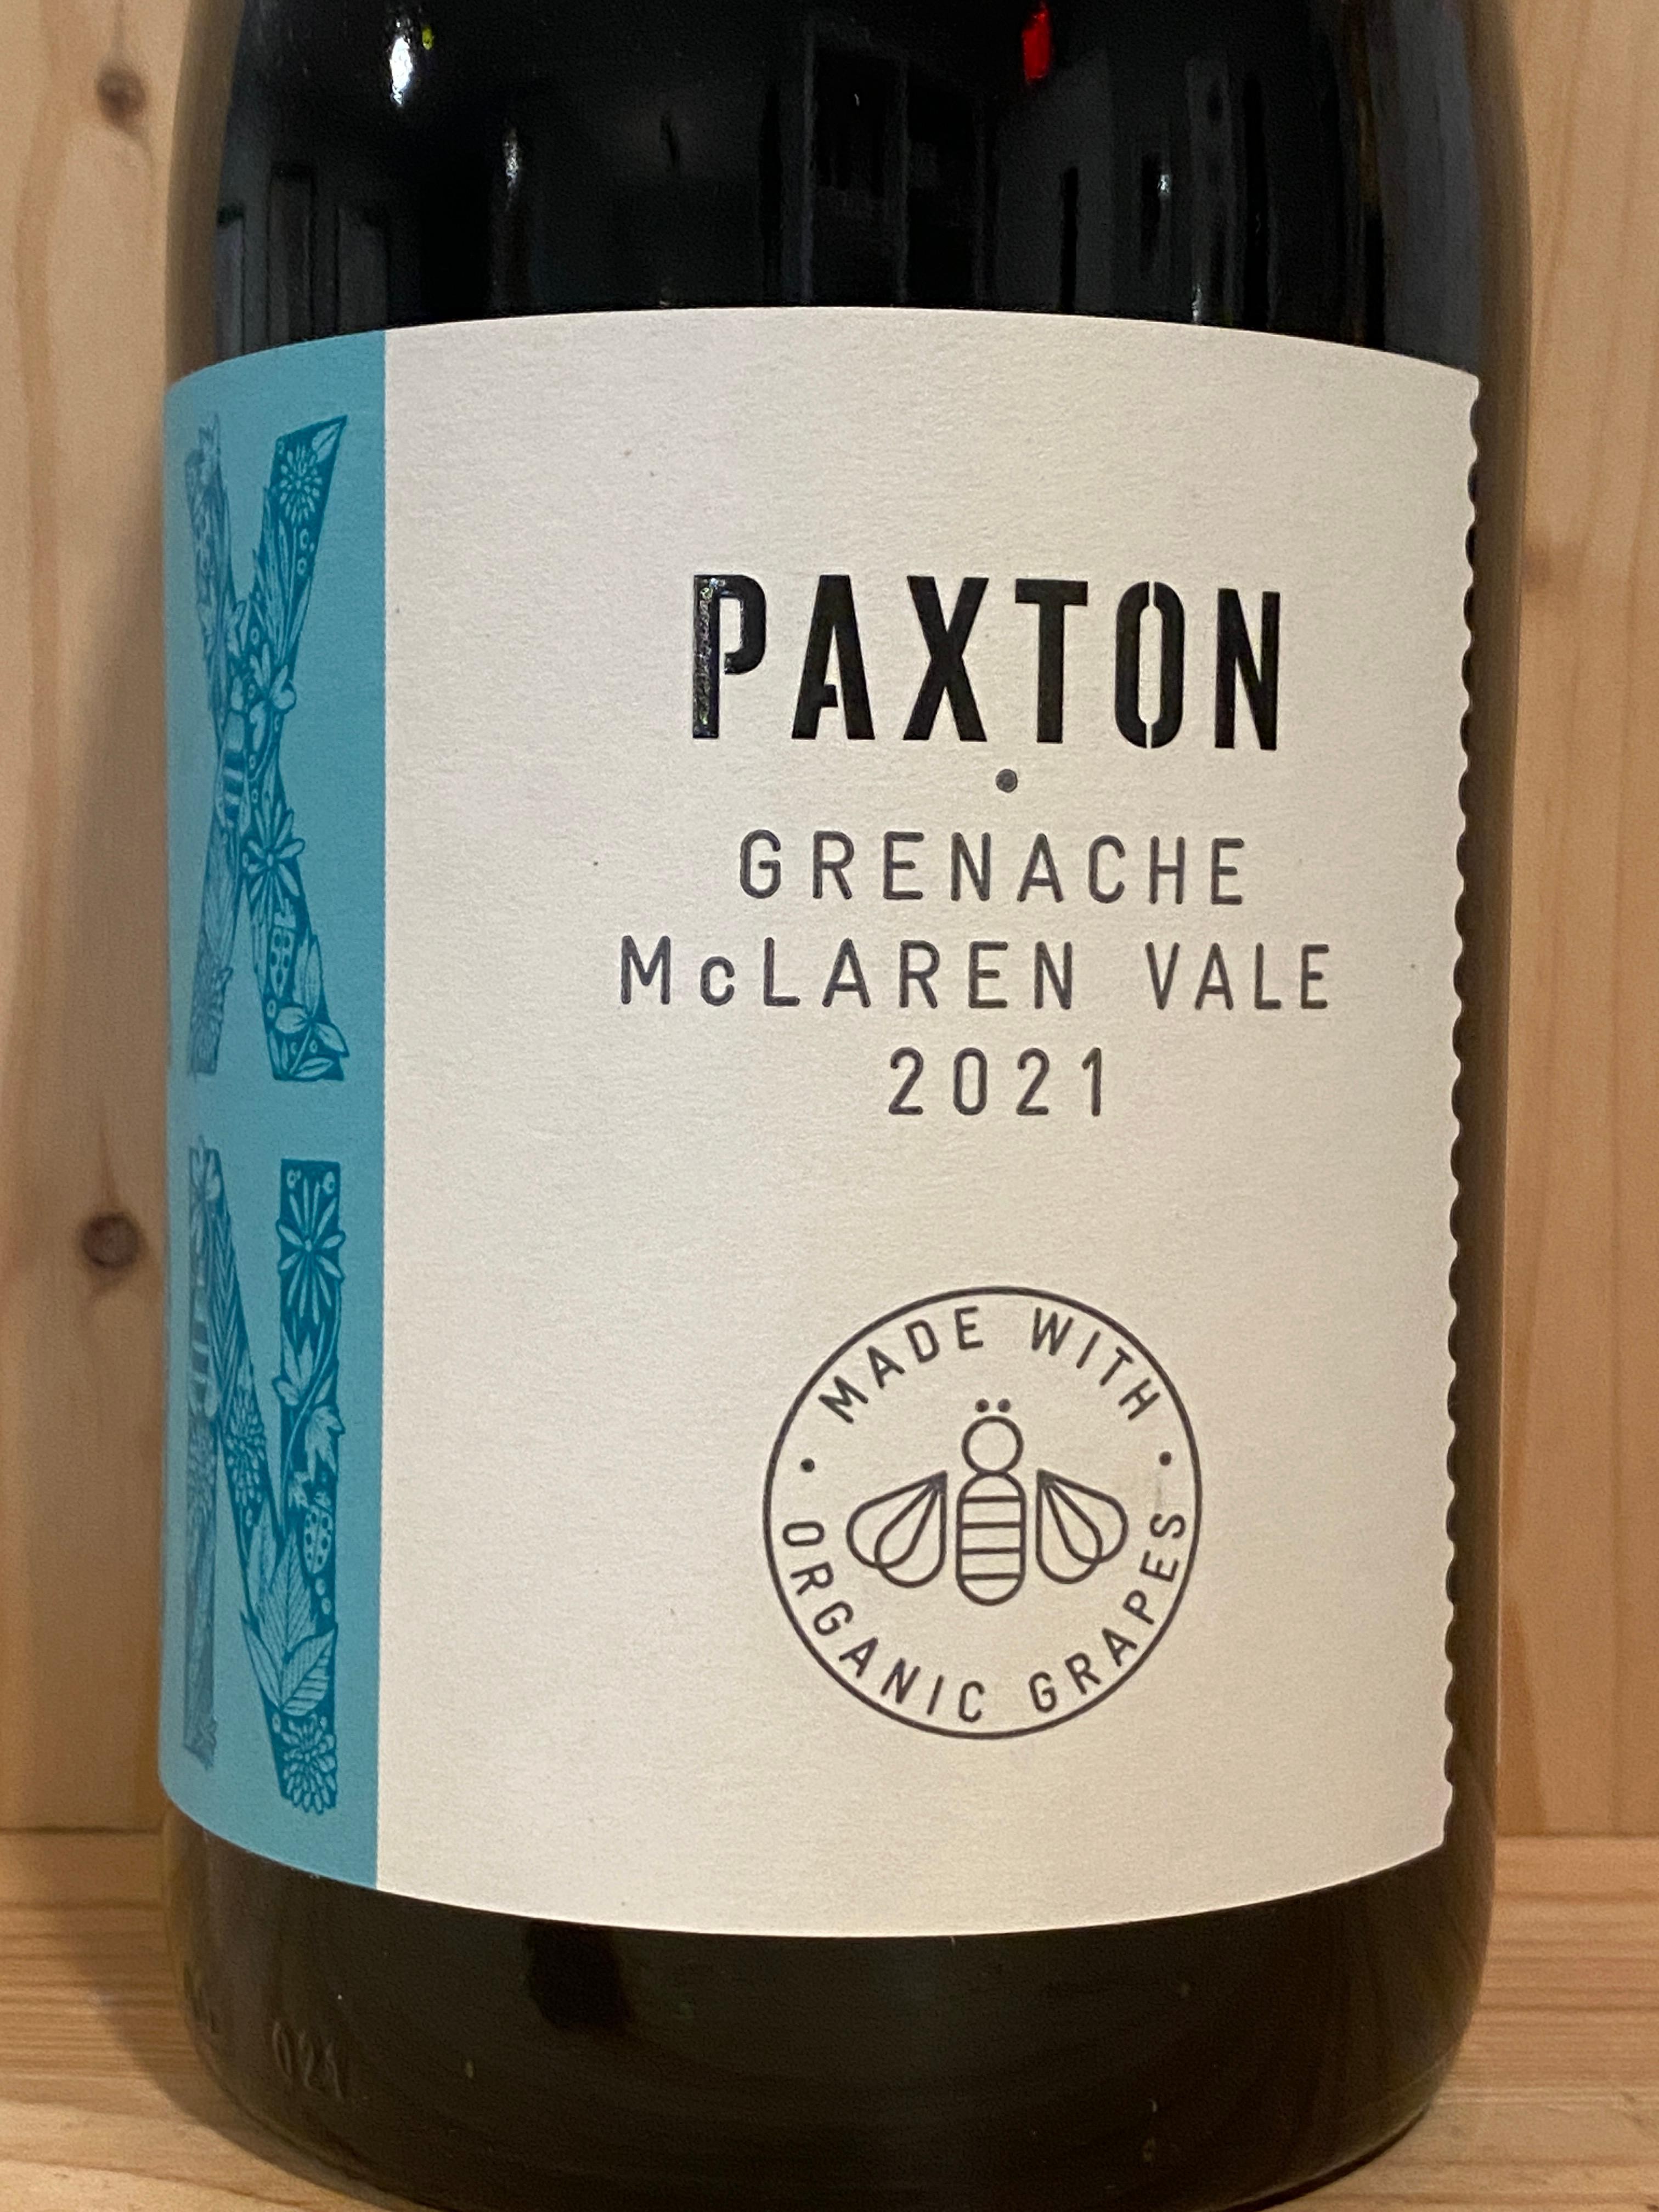 Paxton Grenache 2021: McClaren Vale, Australia